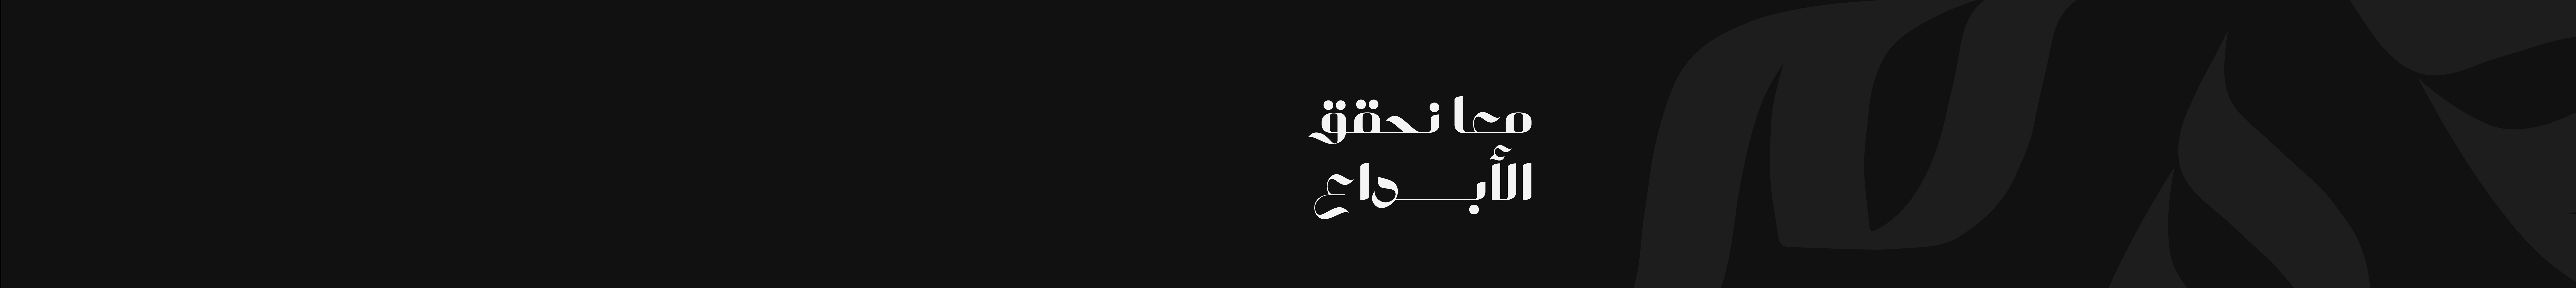 Mohamed Ashraf 99's profile banner